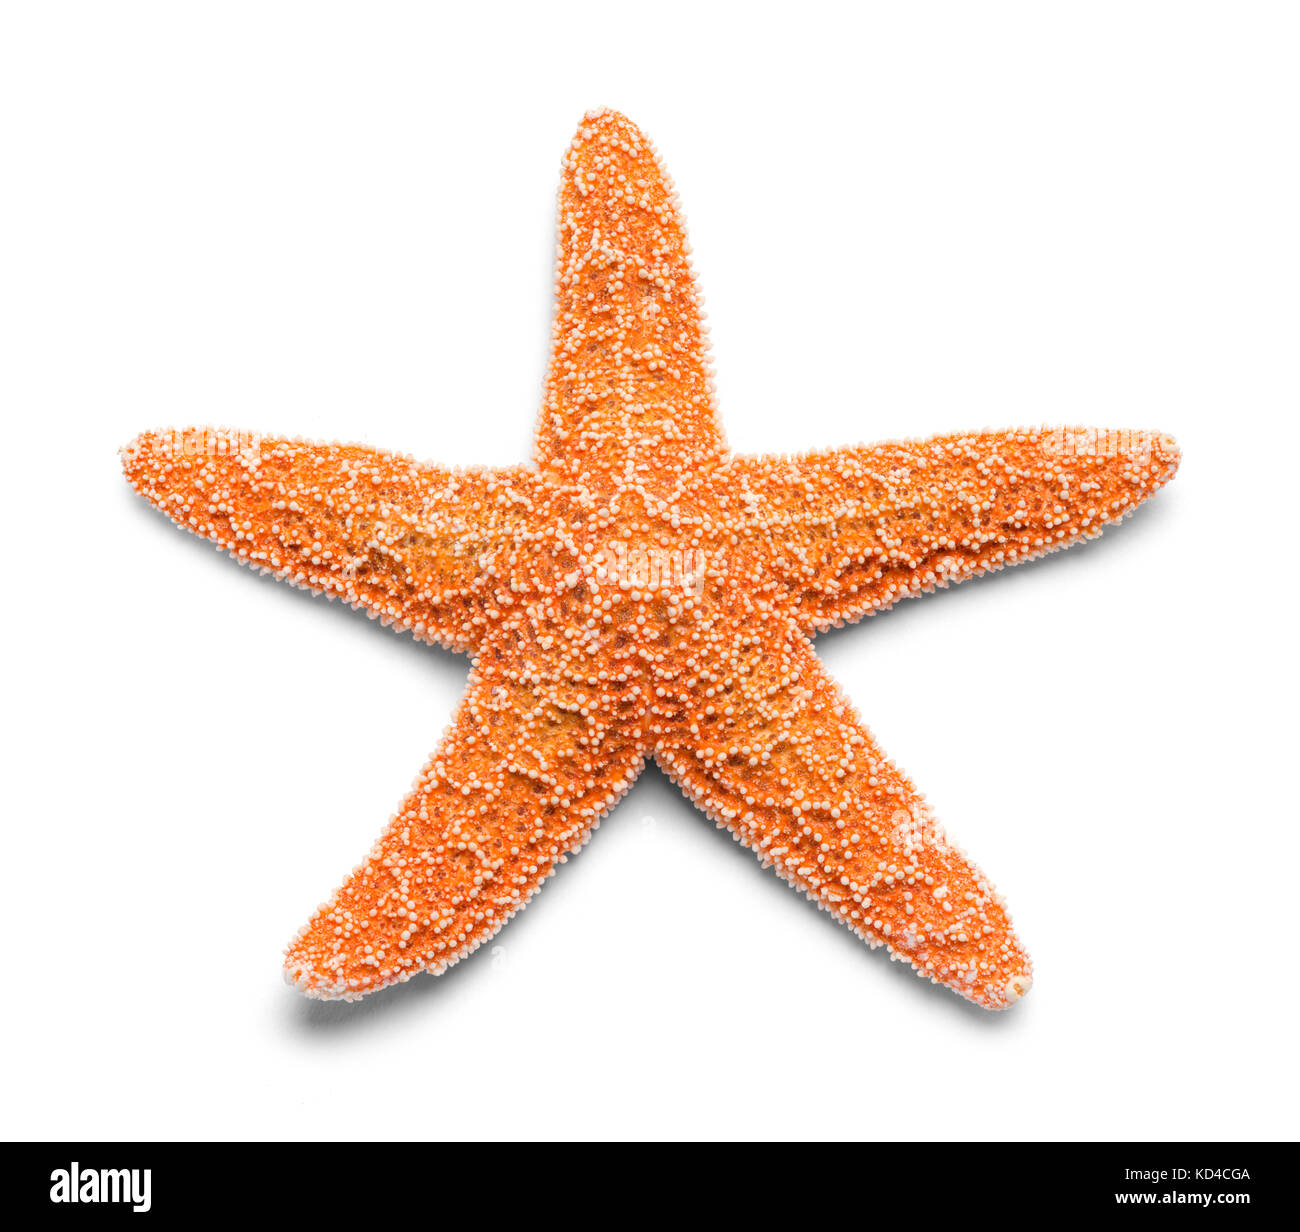 Single Real Orange Starfish Isolated on White Background. Stock Photo